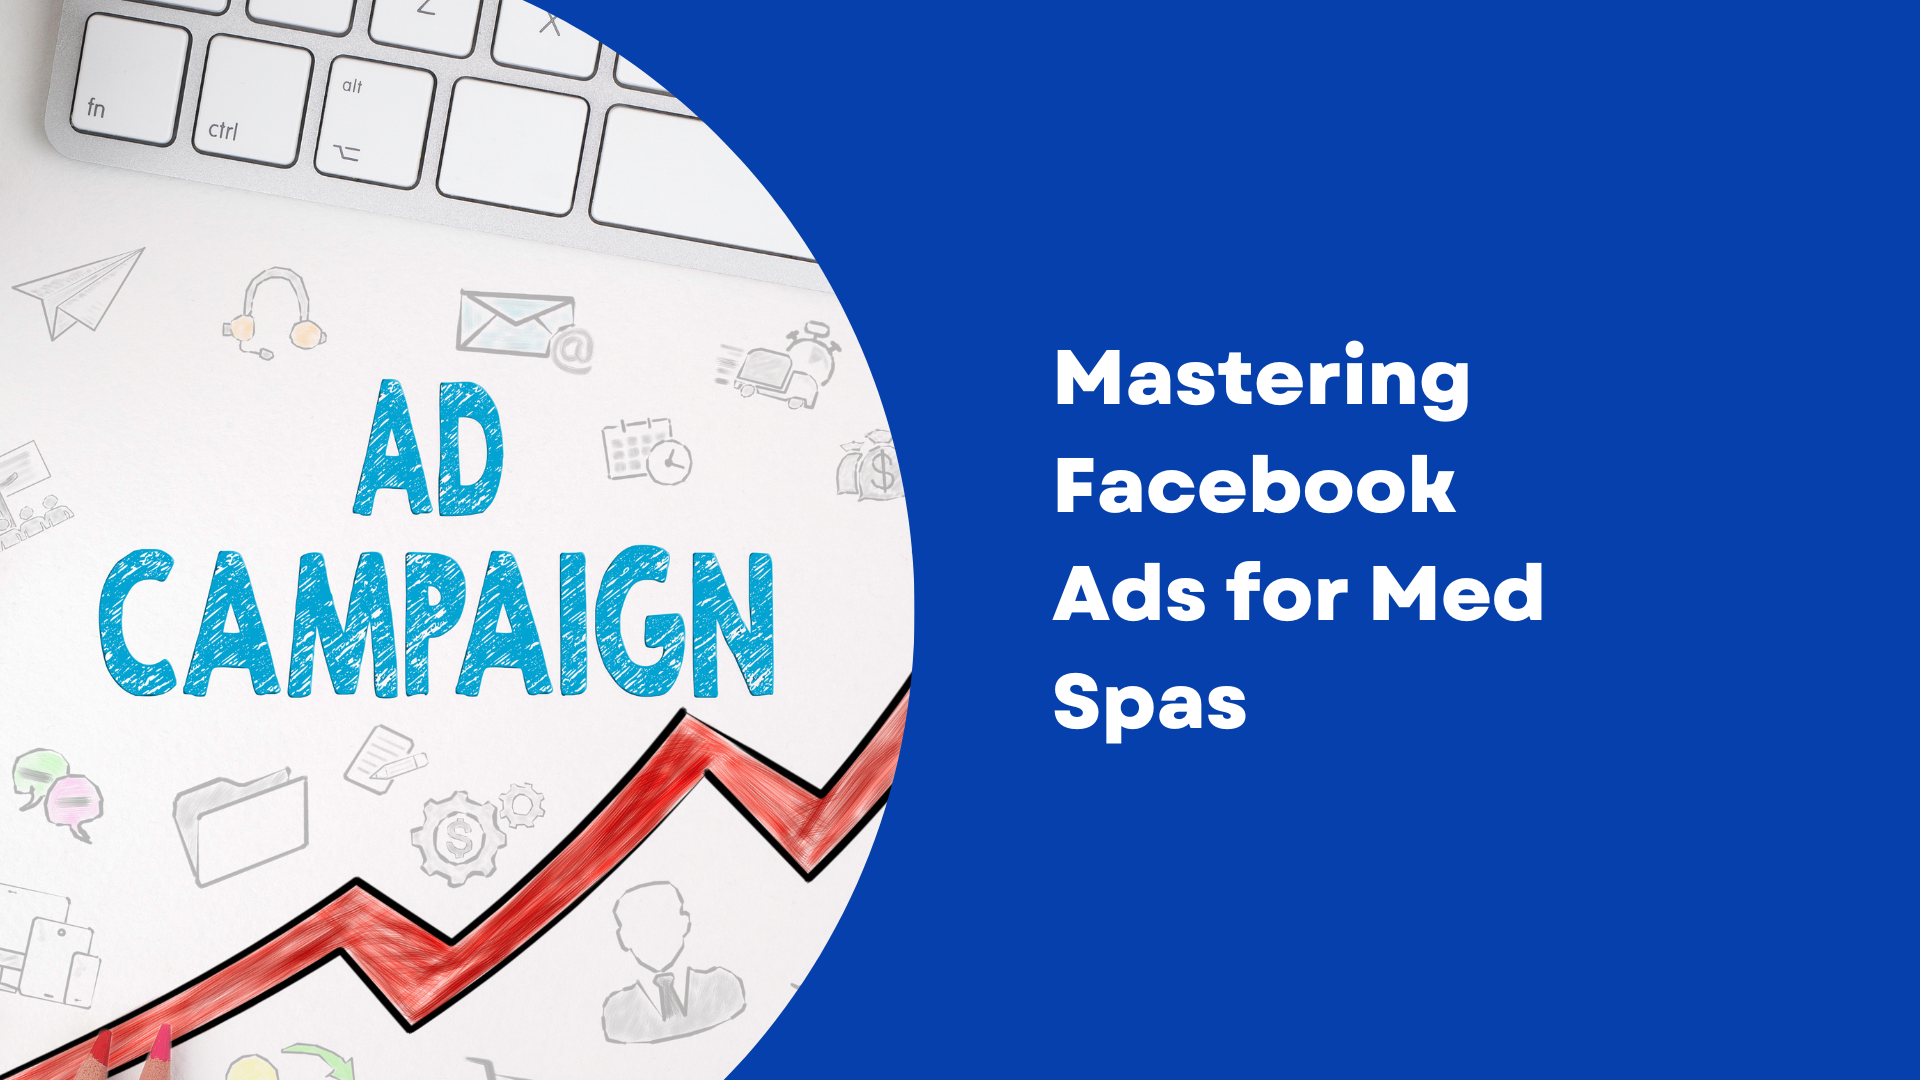 Mastering Facebook Ads for Med Spas